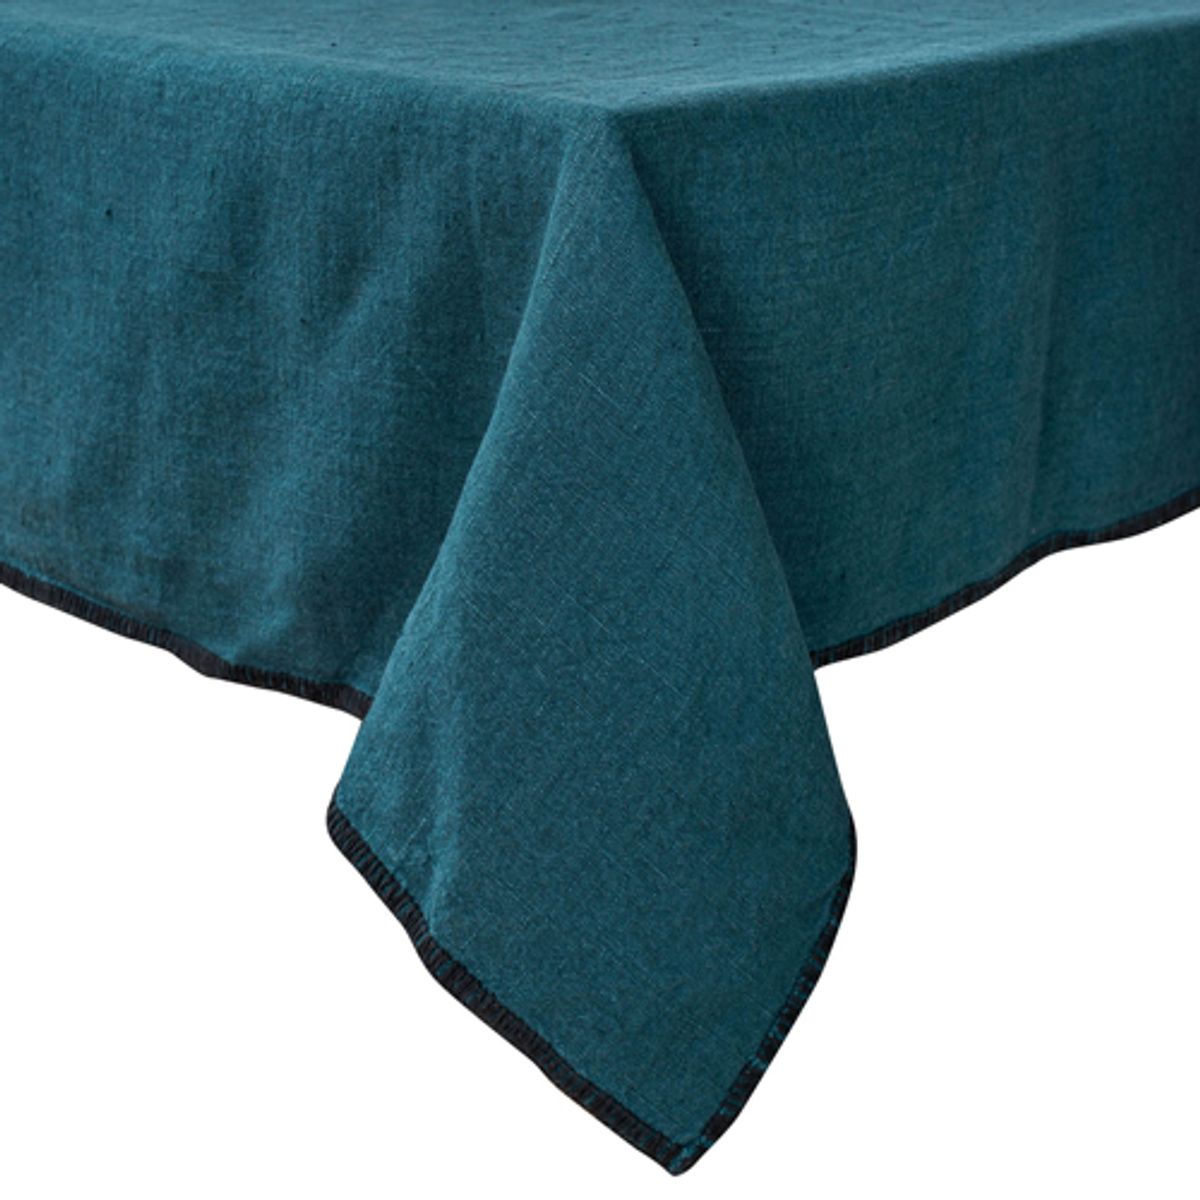 Nappe rectangulaire tissu bleue roi 300 x 170 cm - Falaise réception